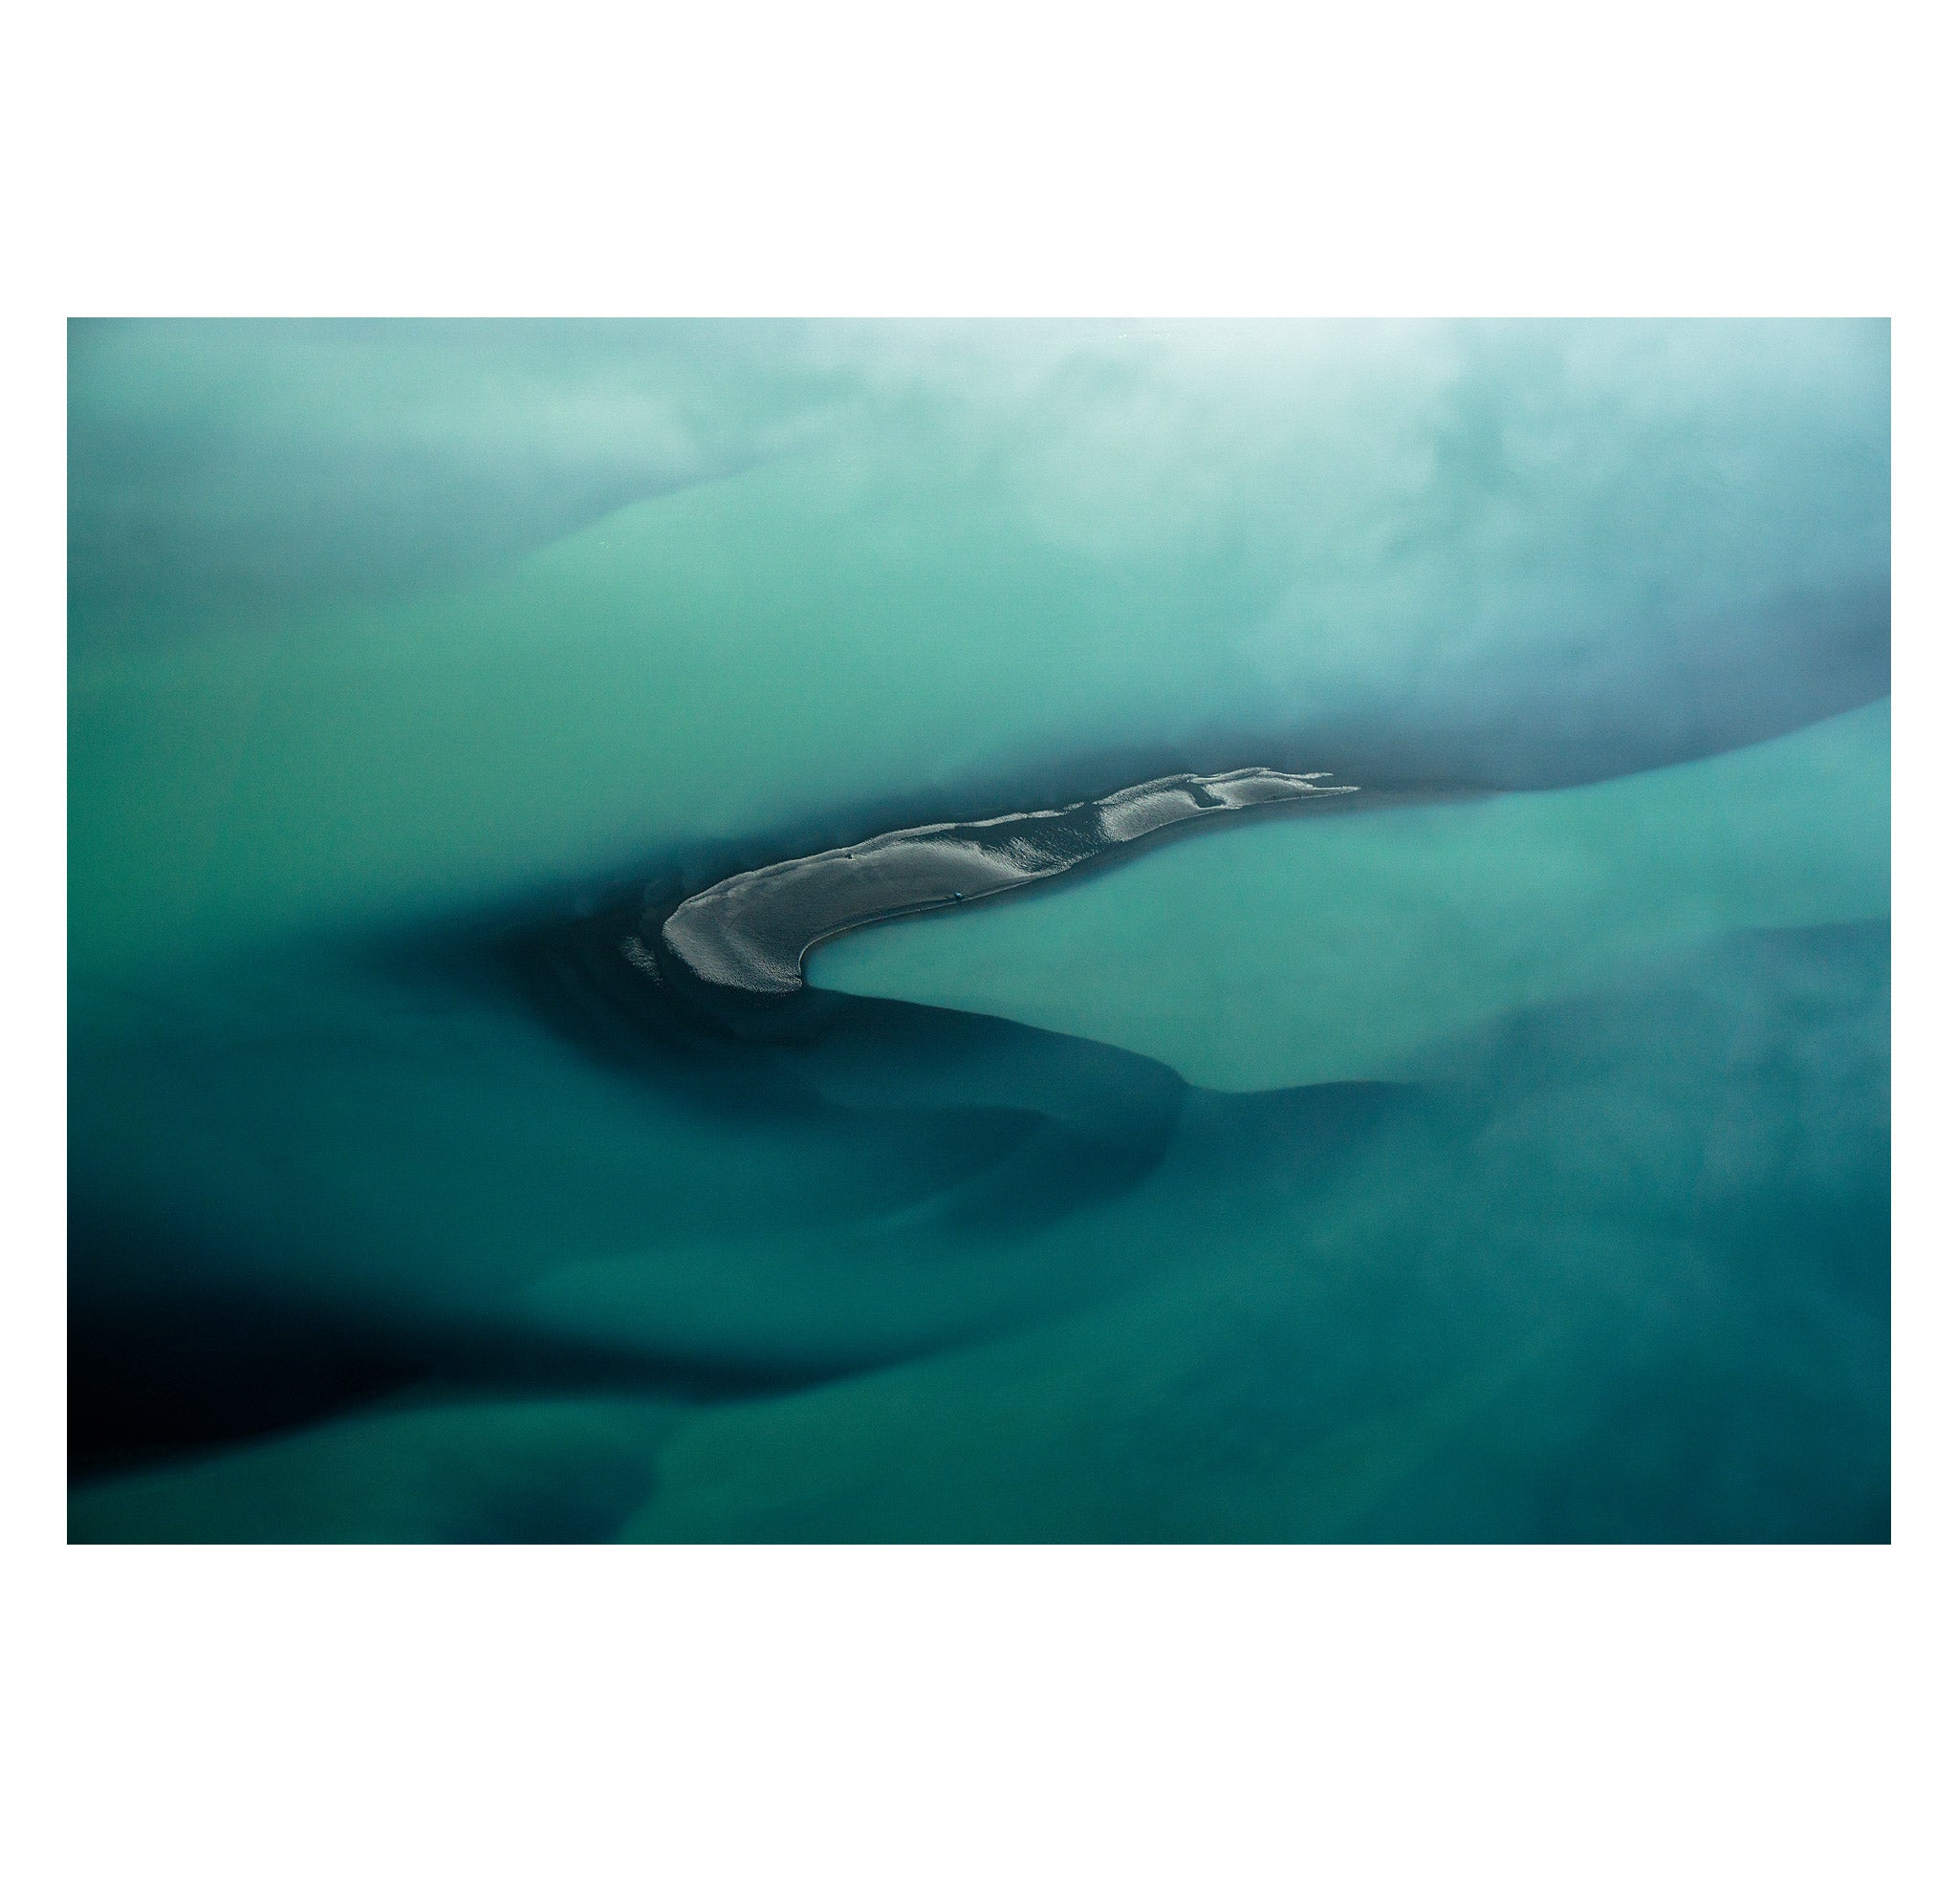 Chris Burkard – Glacier River I